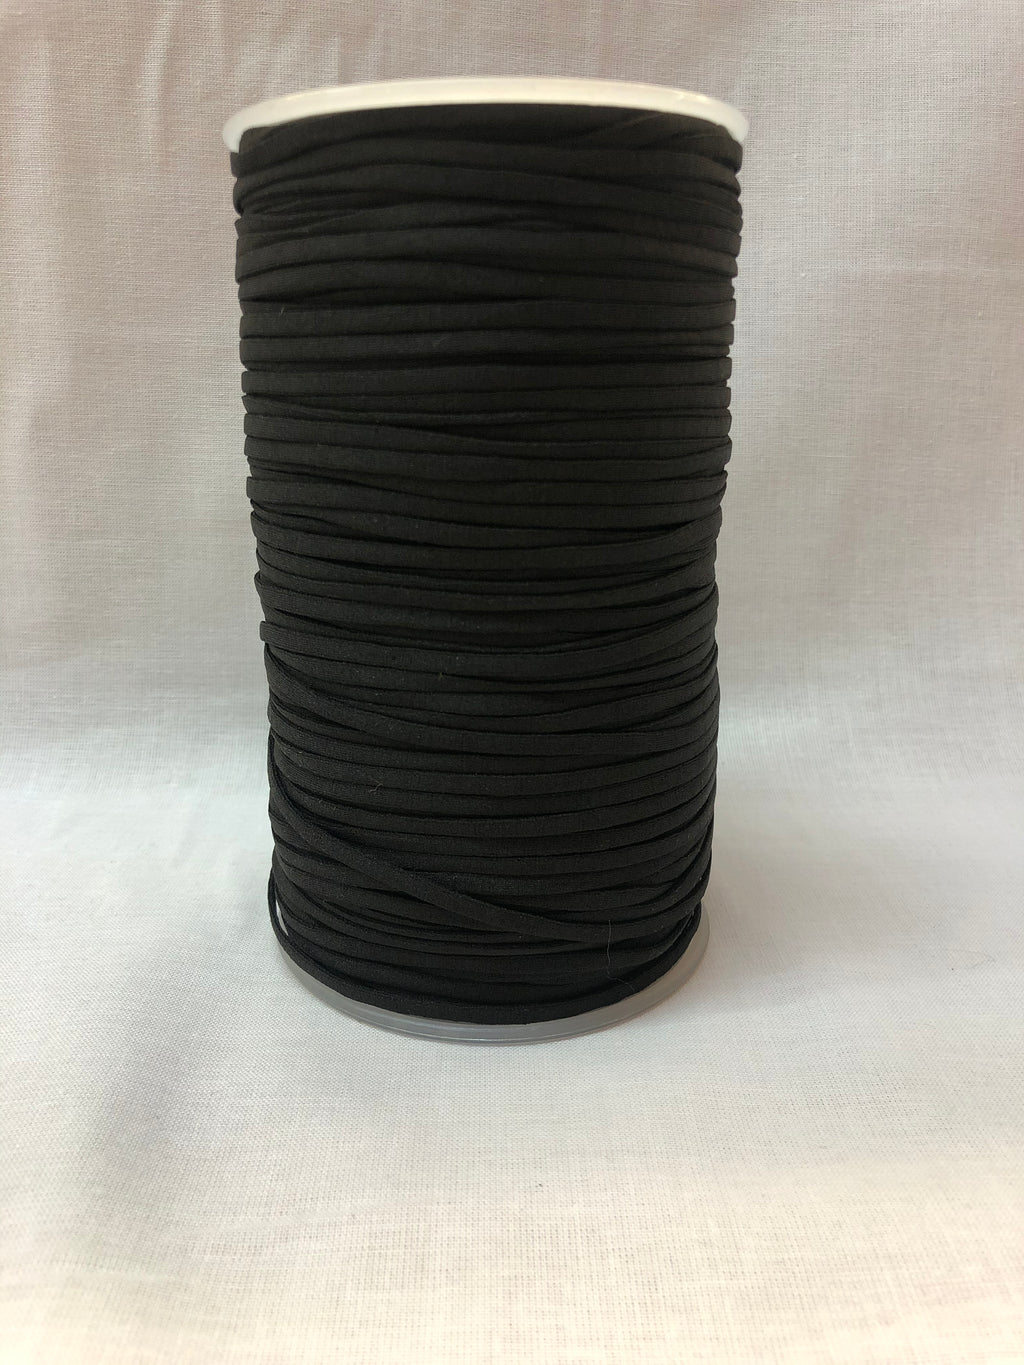 Soft Elastic (4mm) – Affordable Textiles